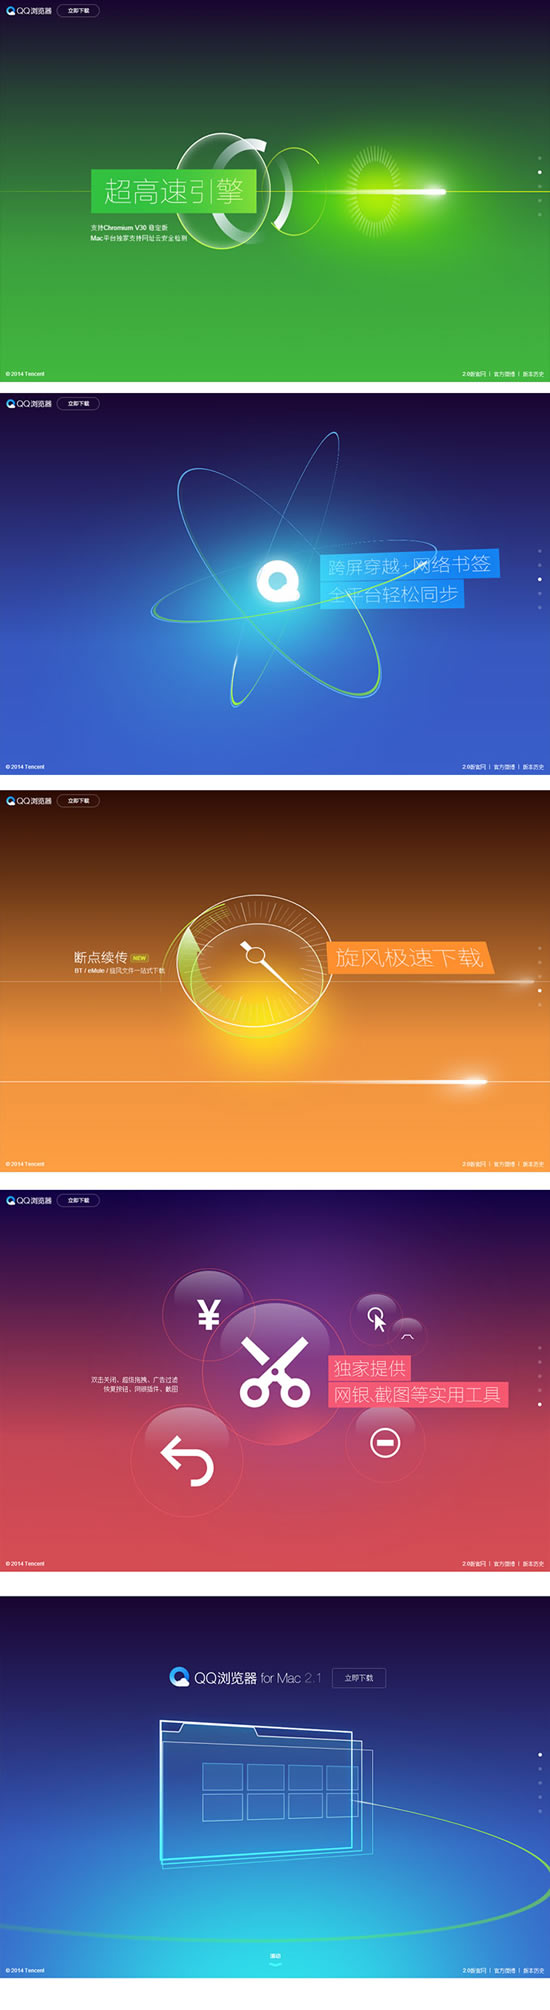 Tencent Browser-Hintergrund-Psd-Vorlage